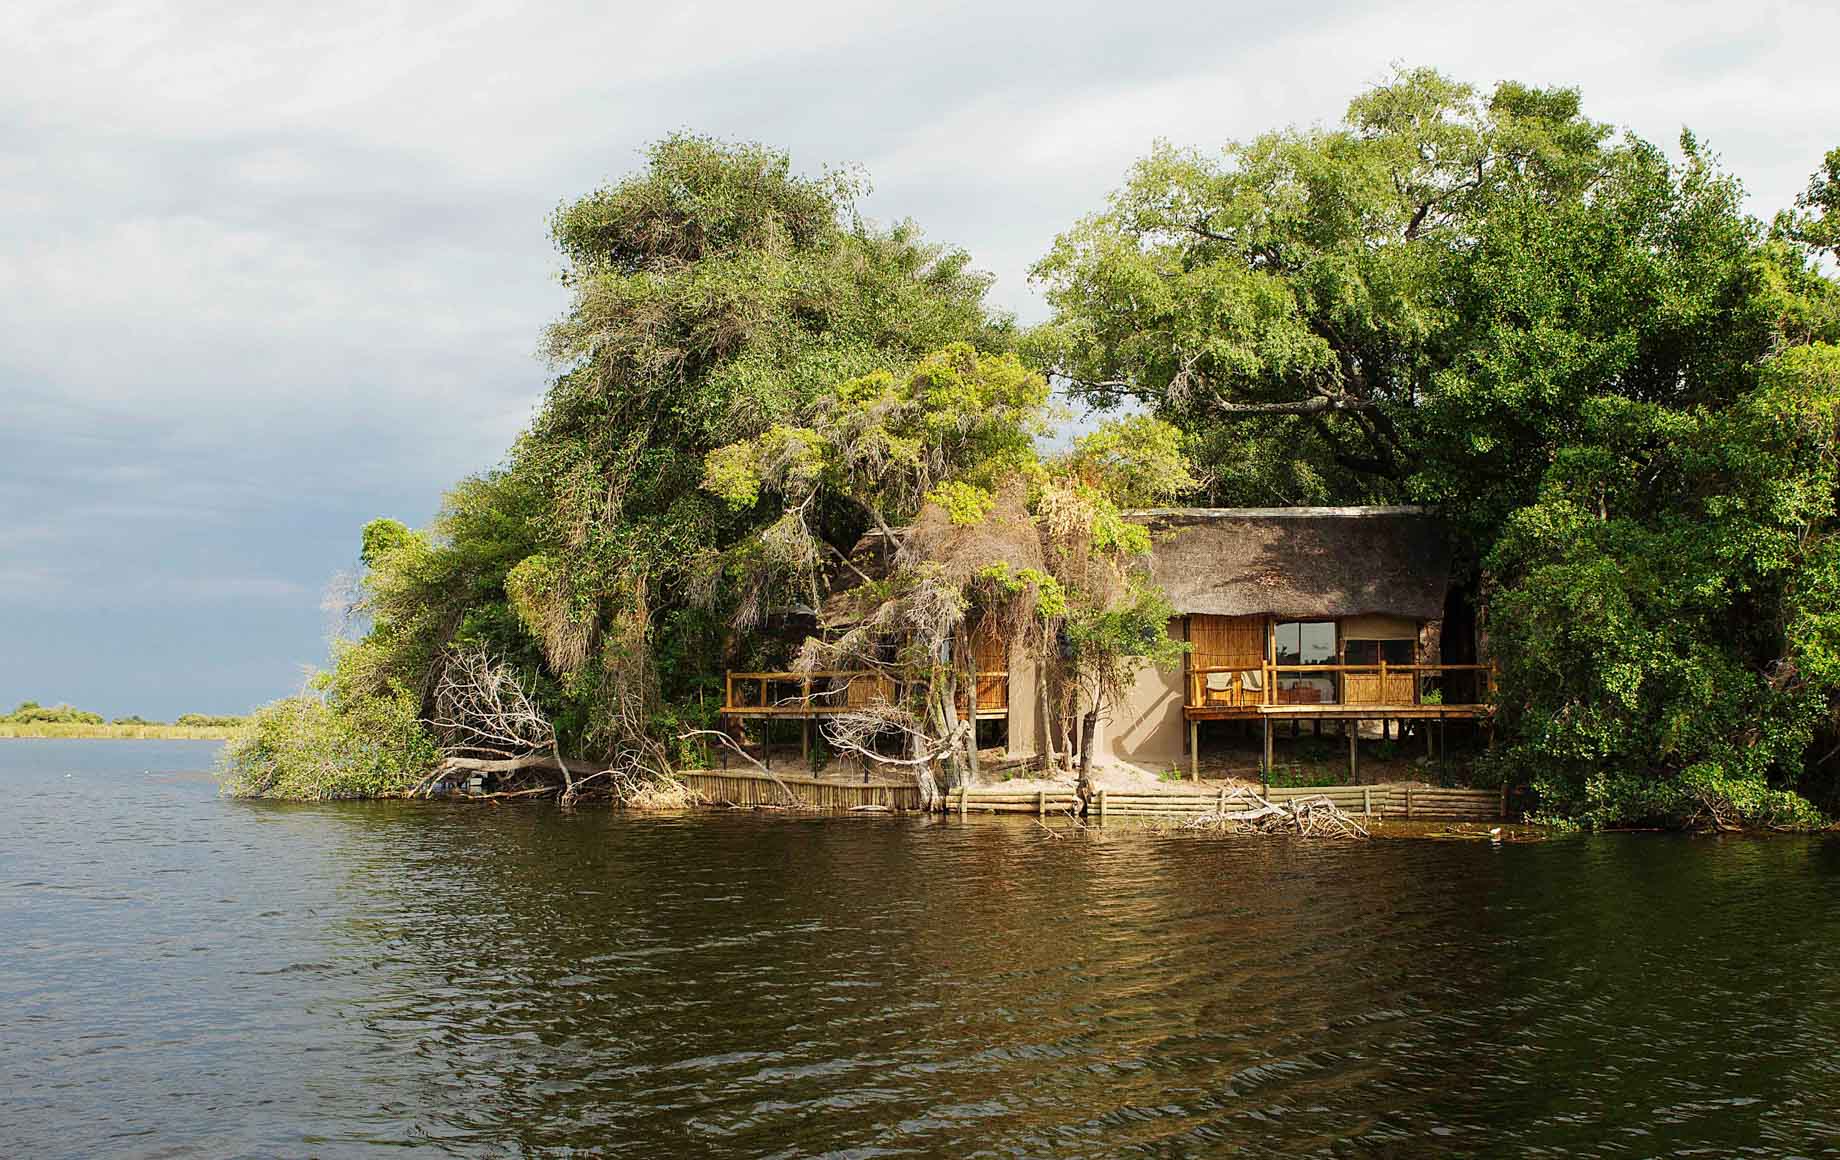 Xugana Island Lodge